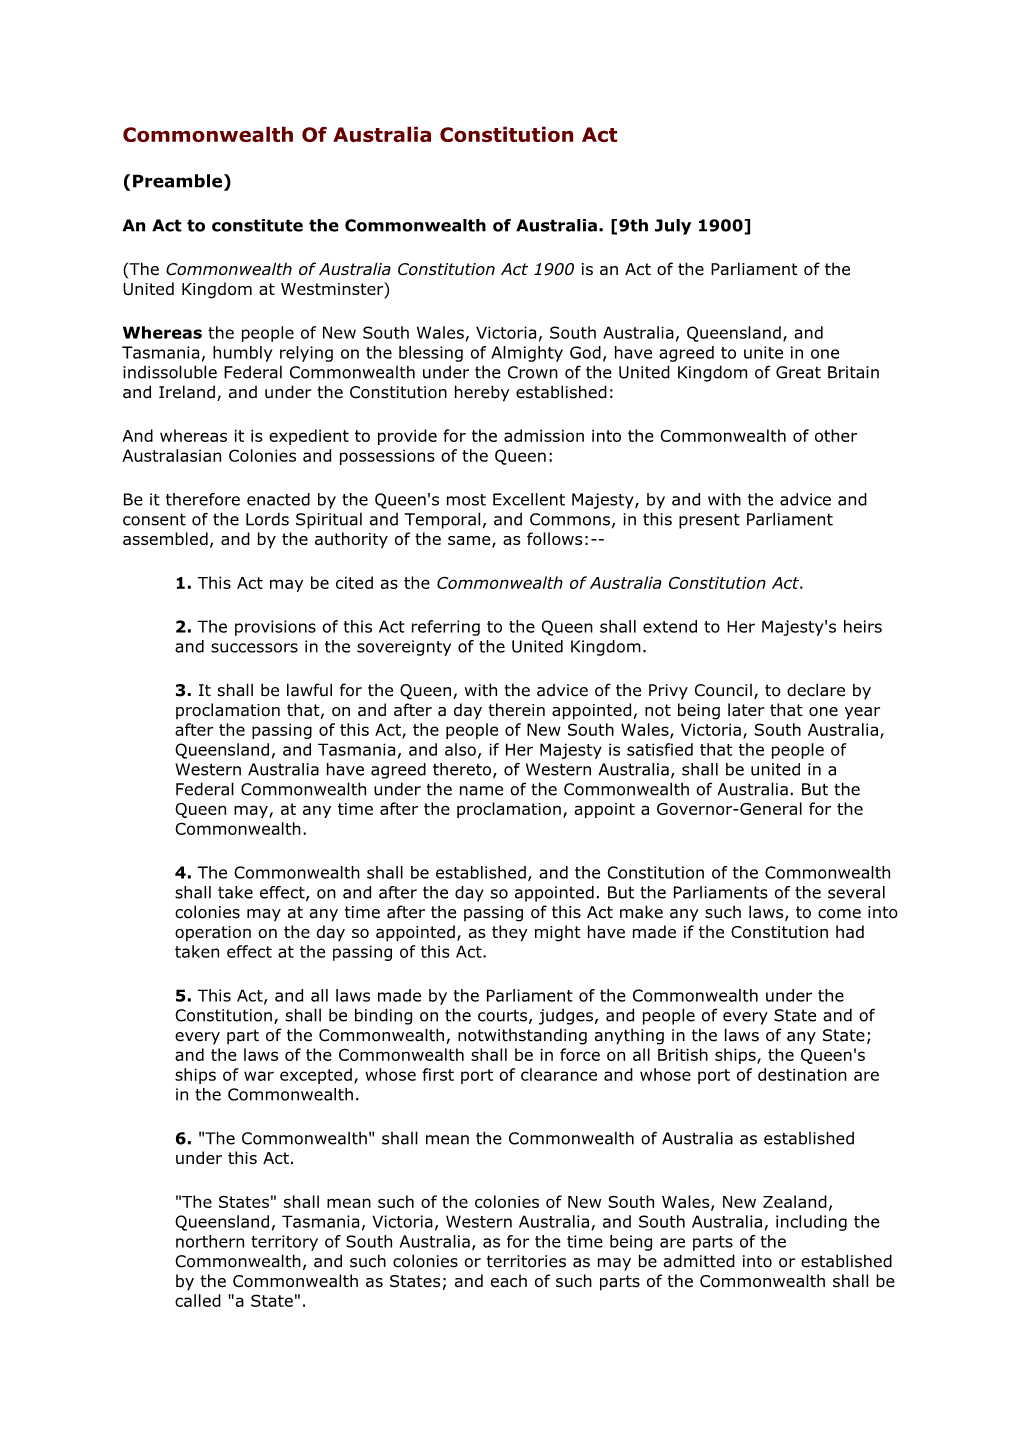 Commonwealth of Australia Constitution Act